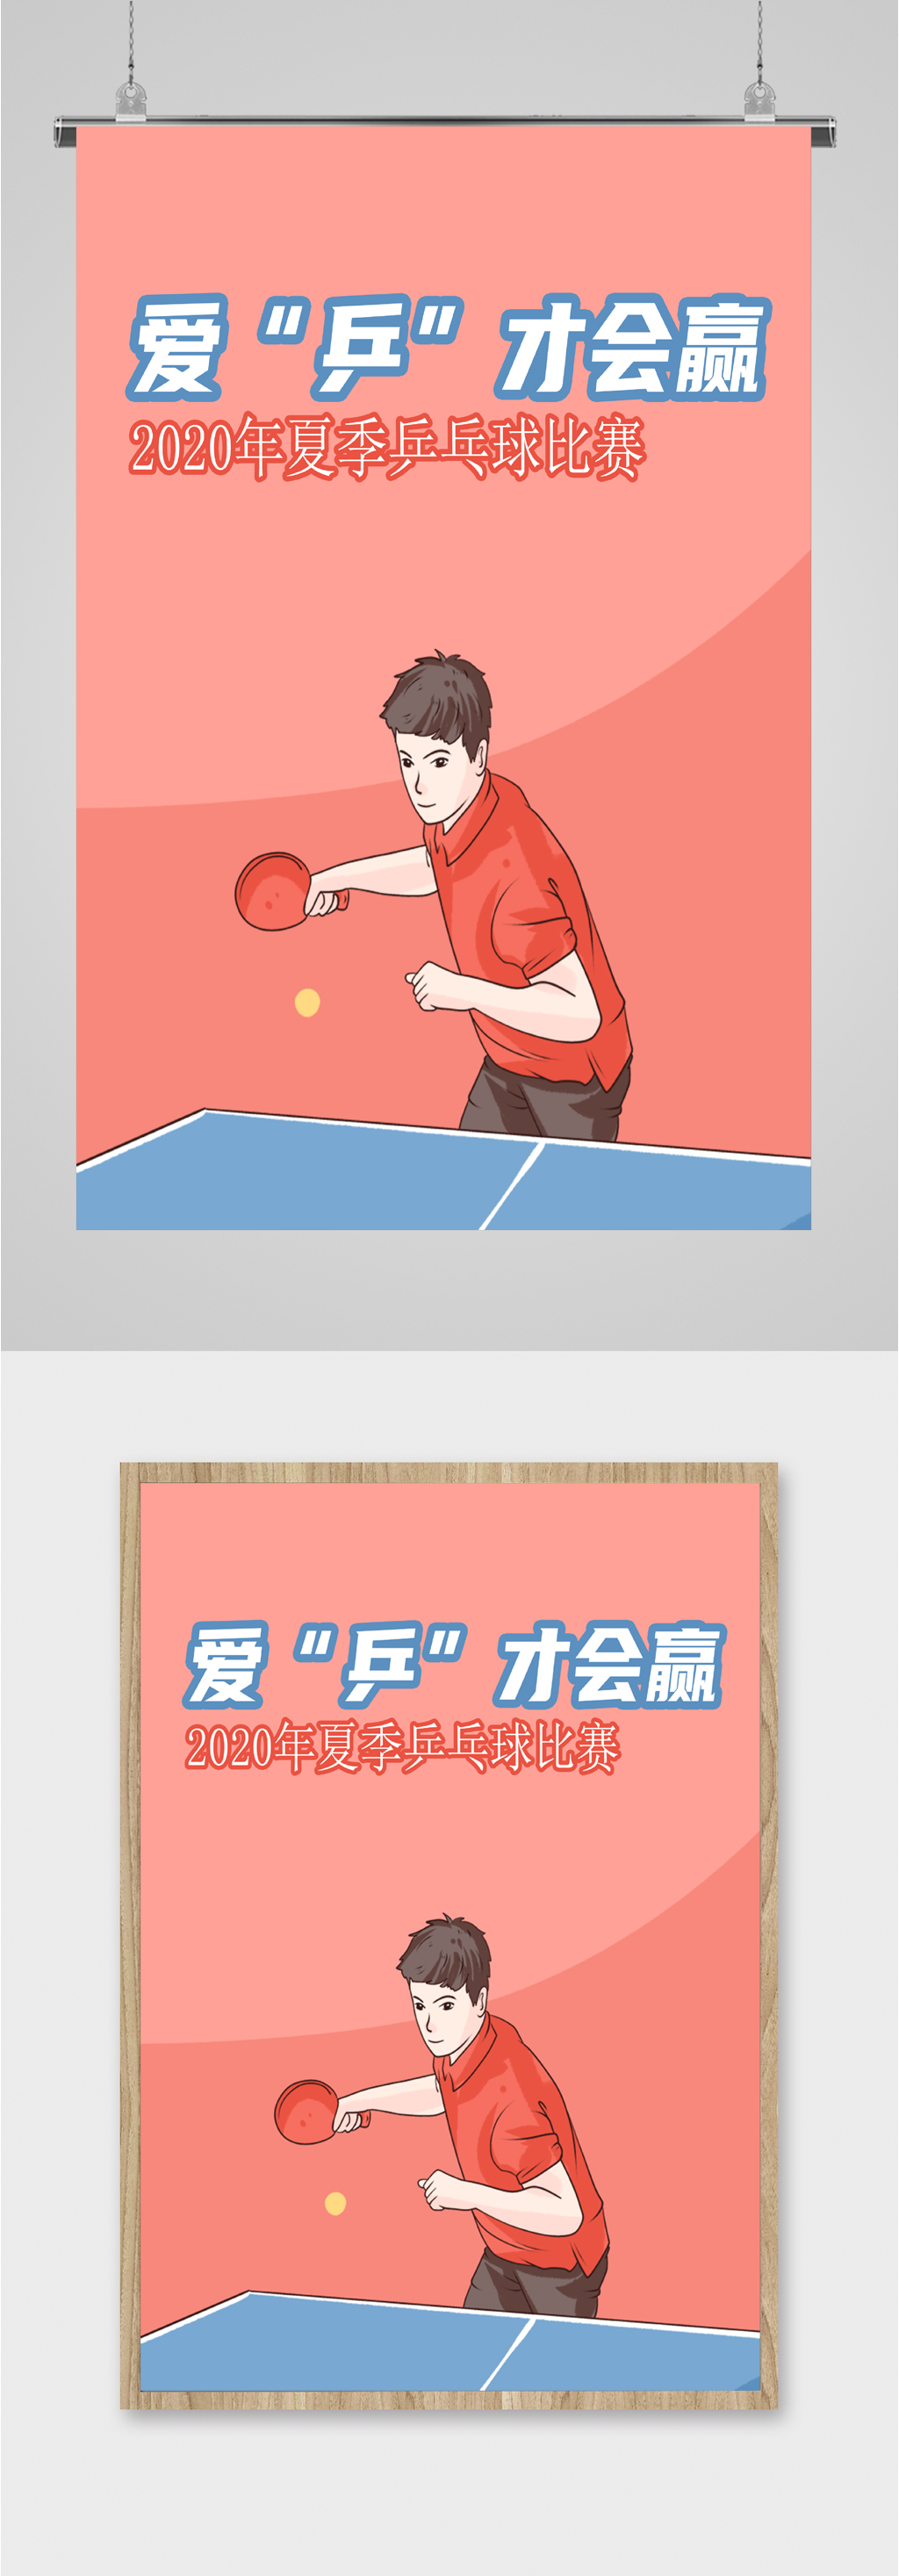 乒乓比赛海报图片